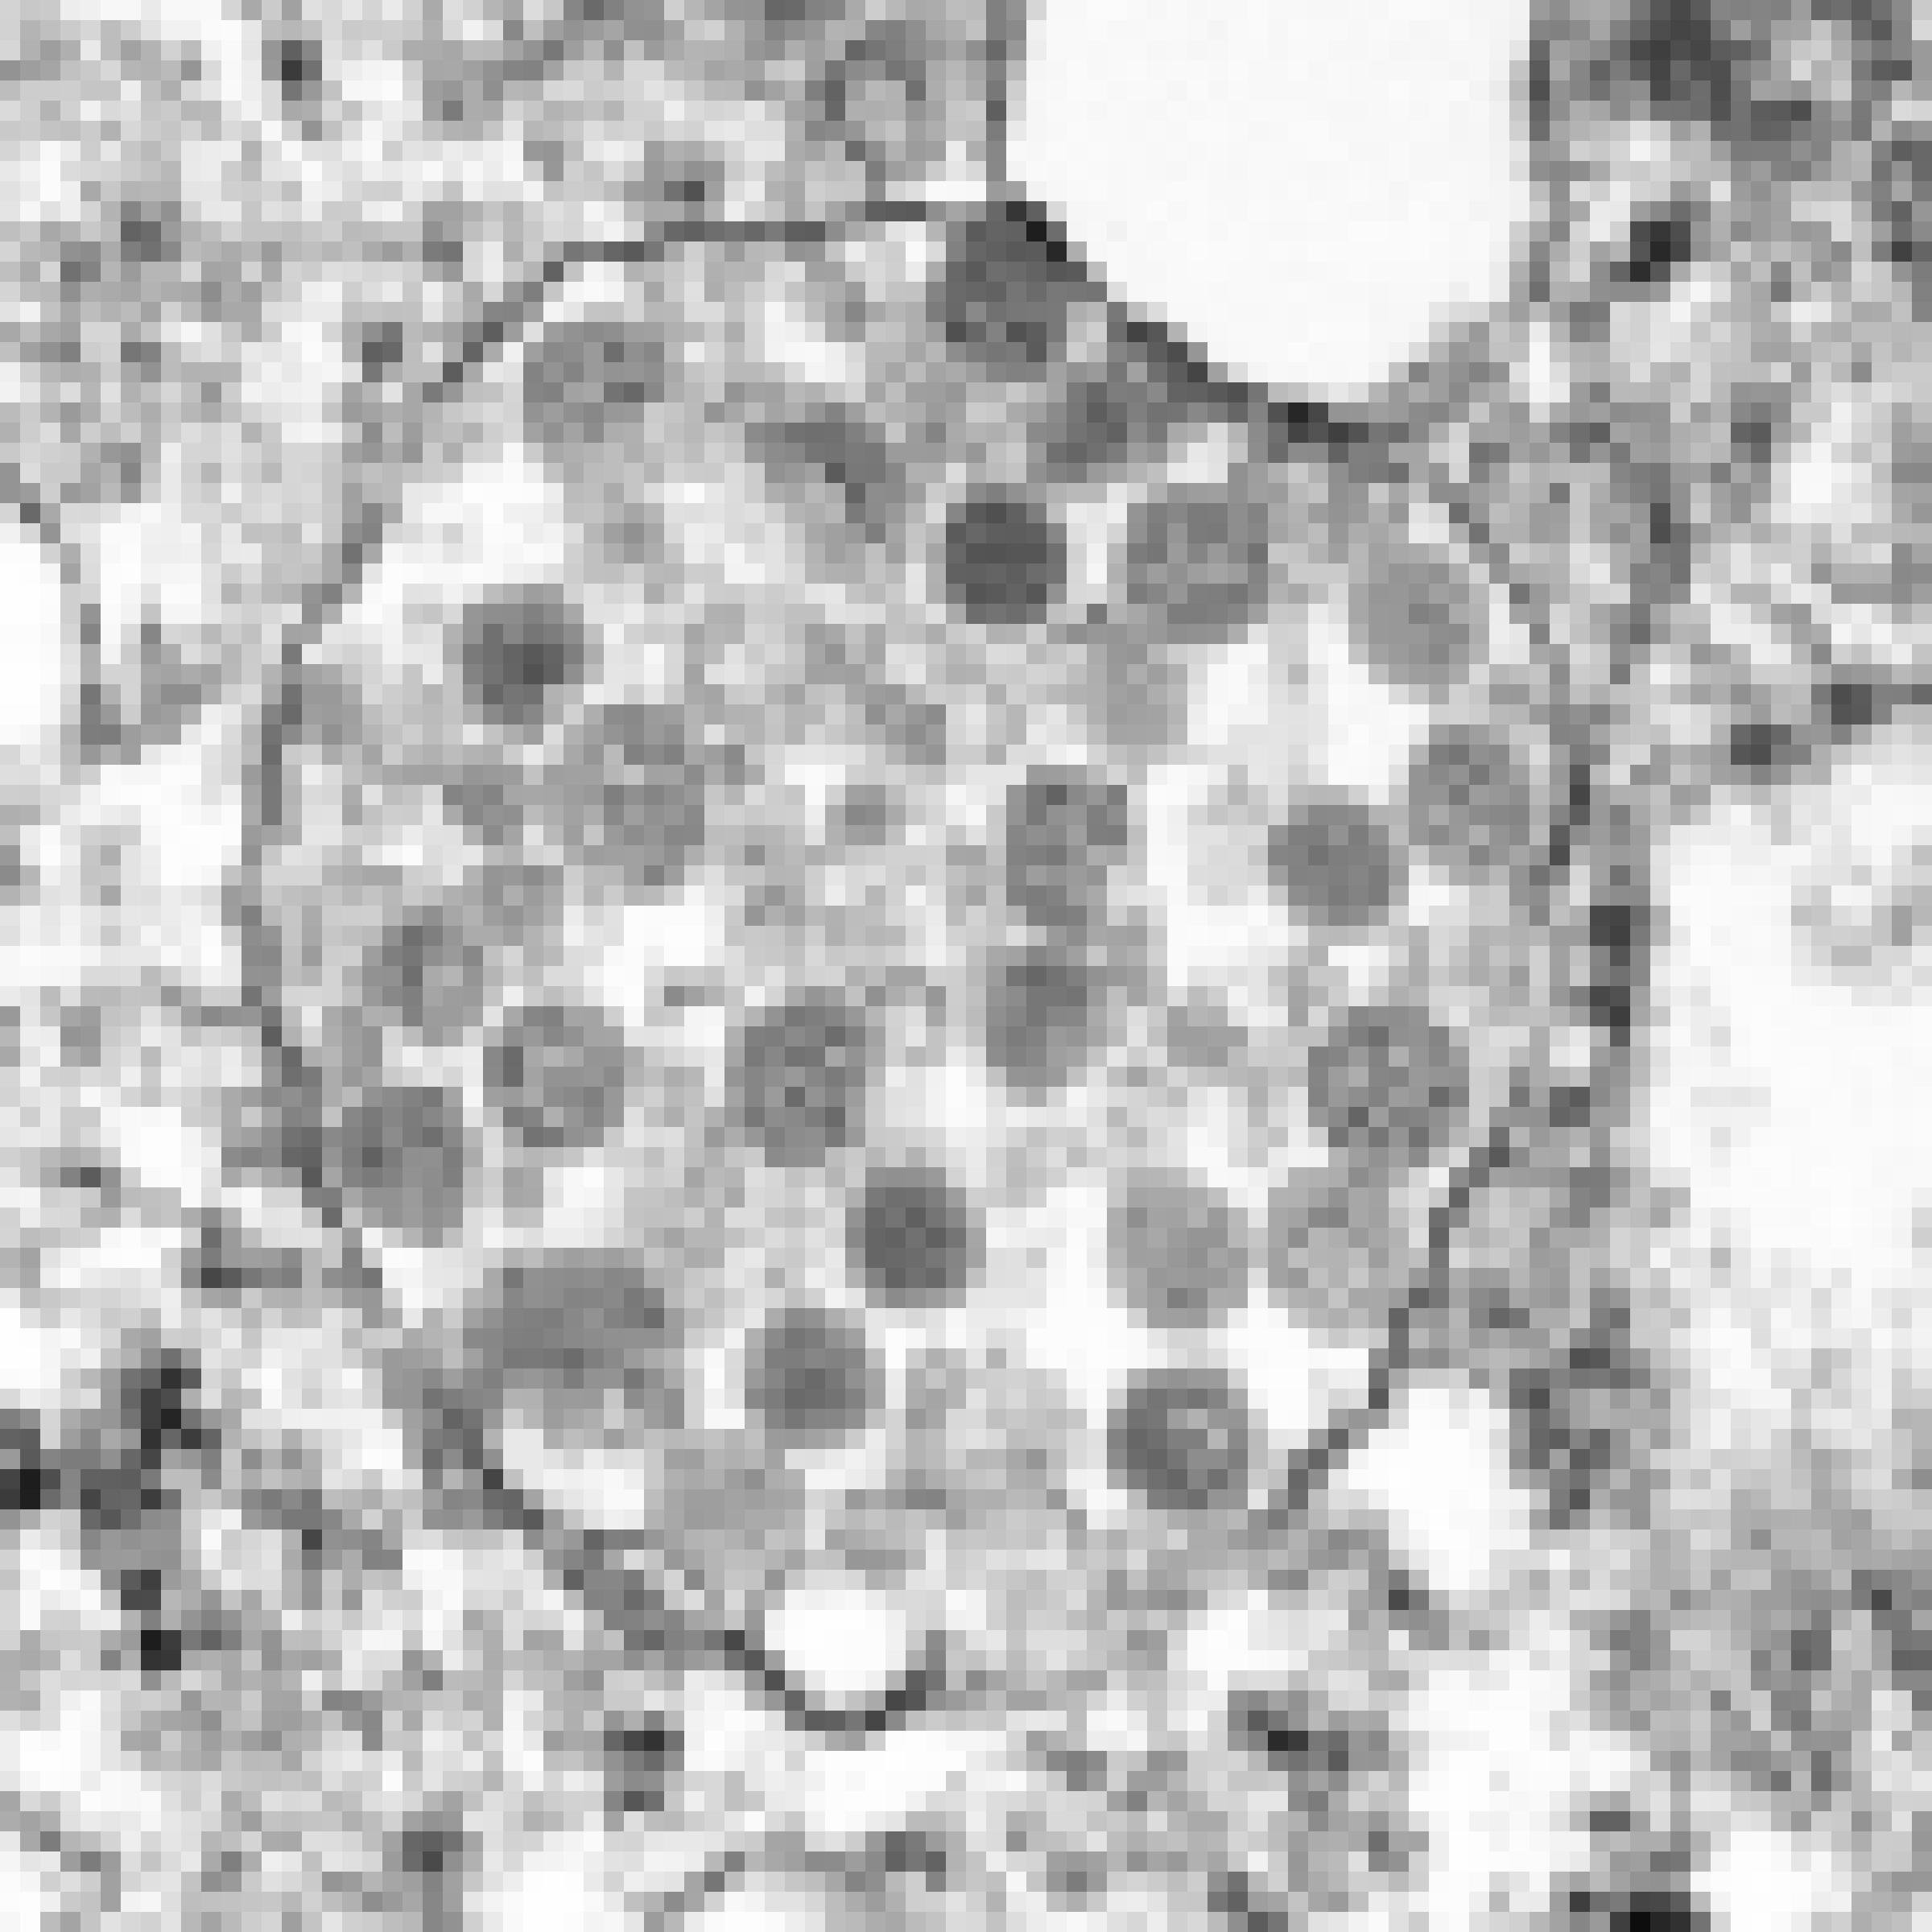 Elektronenmikroskopische Aufnahme einer mit Sars-CoV-2 infizierten Körperzelle. Zu erkennen sind die sphärischen Viruspartikel, die von der Zelle produziert worden sind.